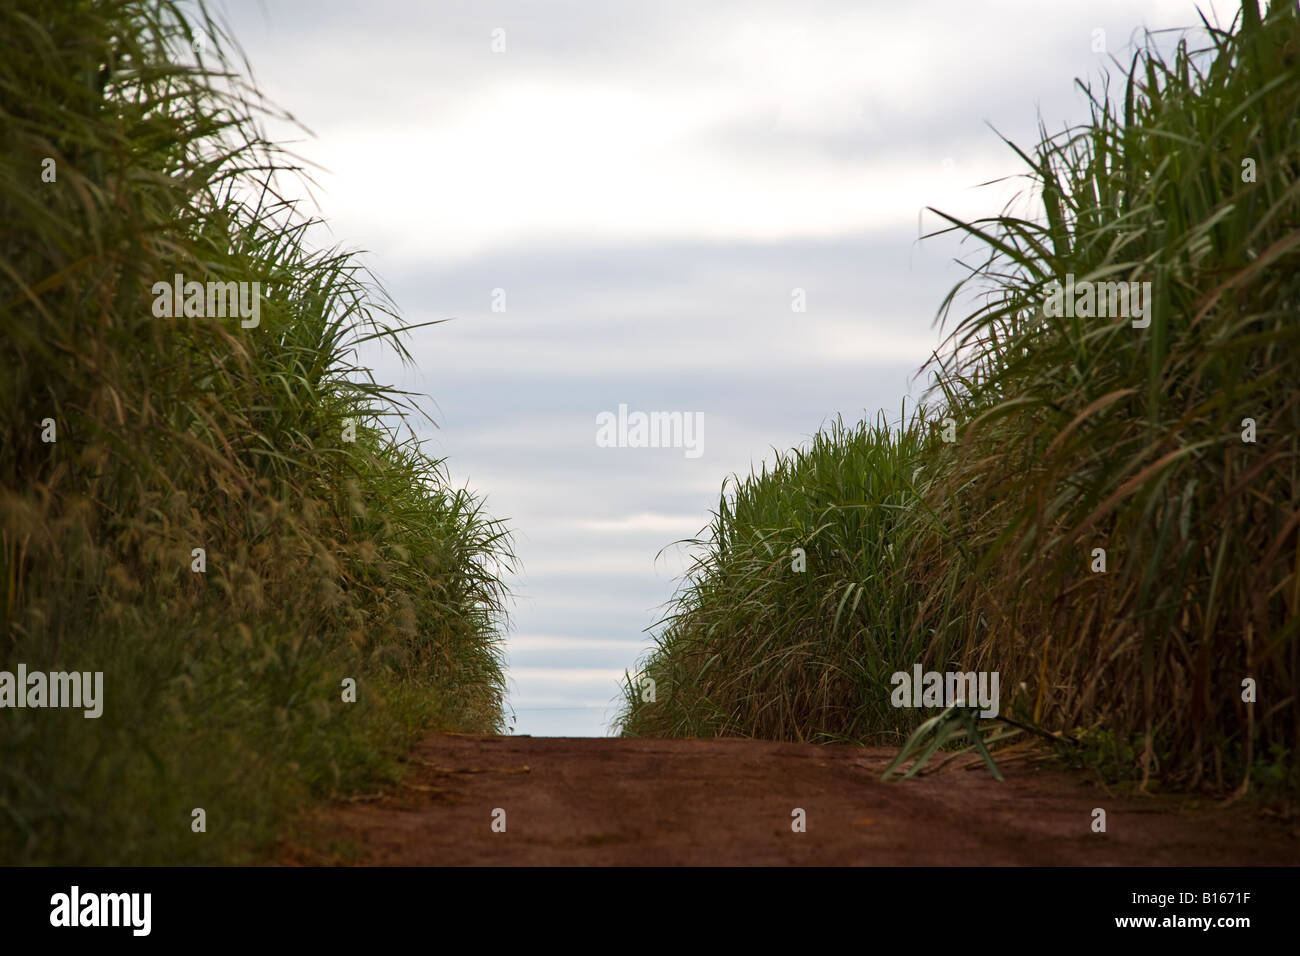 Zuckerrohr-Plantage in der Nähe von Ribeirao Preto Bundesstaat Sao Paulo Brasilien Stockfoto